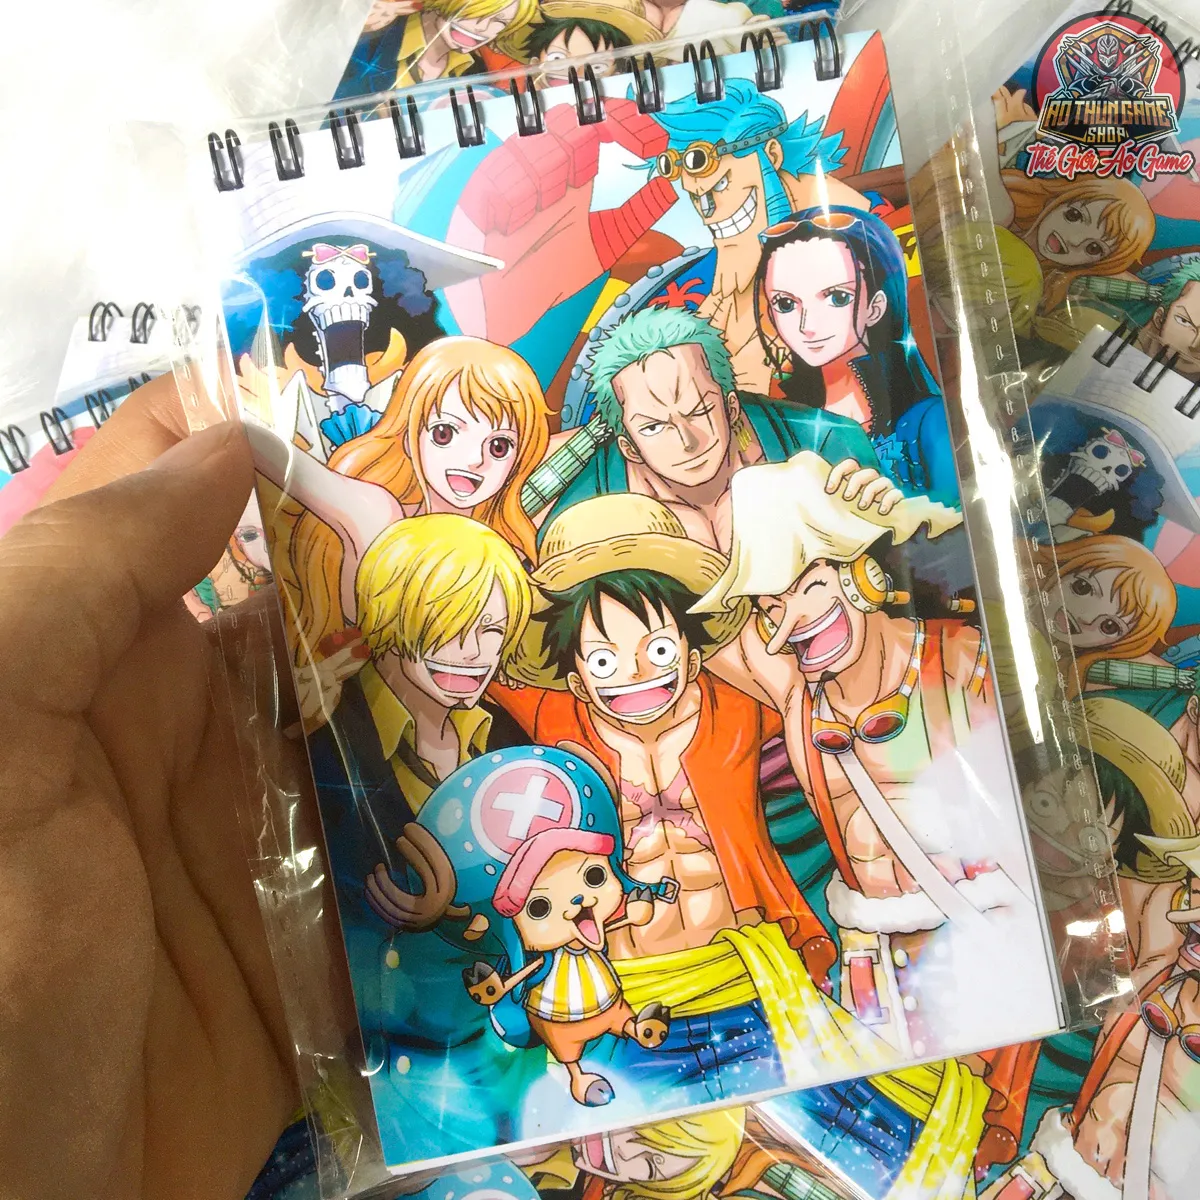 Sổ tay One Piece Nhóm Luffy với bìa thiết kế độc đáo và giấy in chất lượng cao sẽ là vật dụng không thể thiếu cho các fan của series này. Hãy cùng ghi chép những moment đáng nhớ trong cuộc hành trình của Luffy và bọn họ!